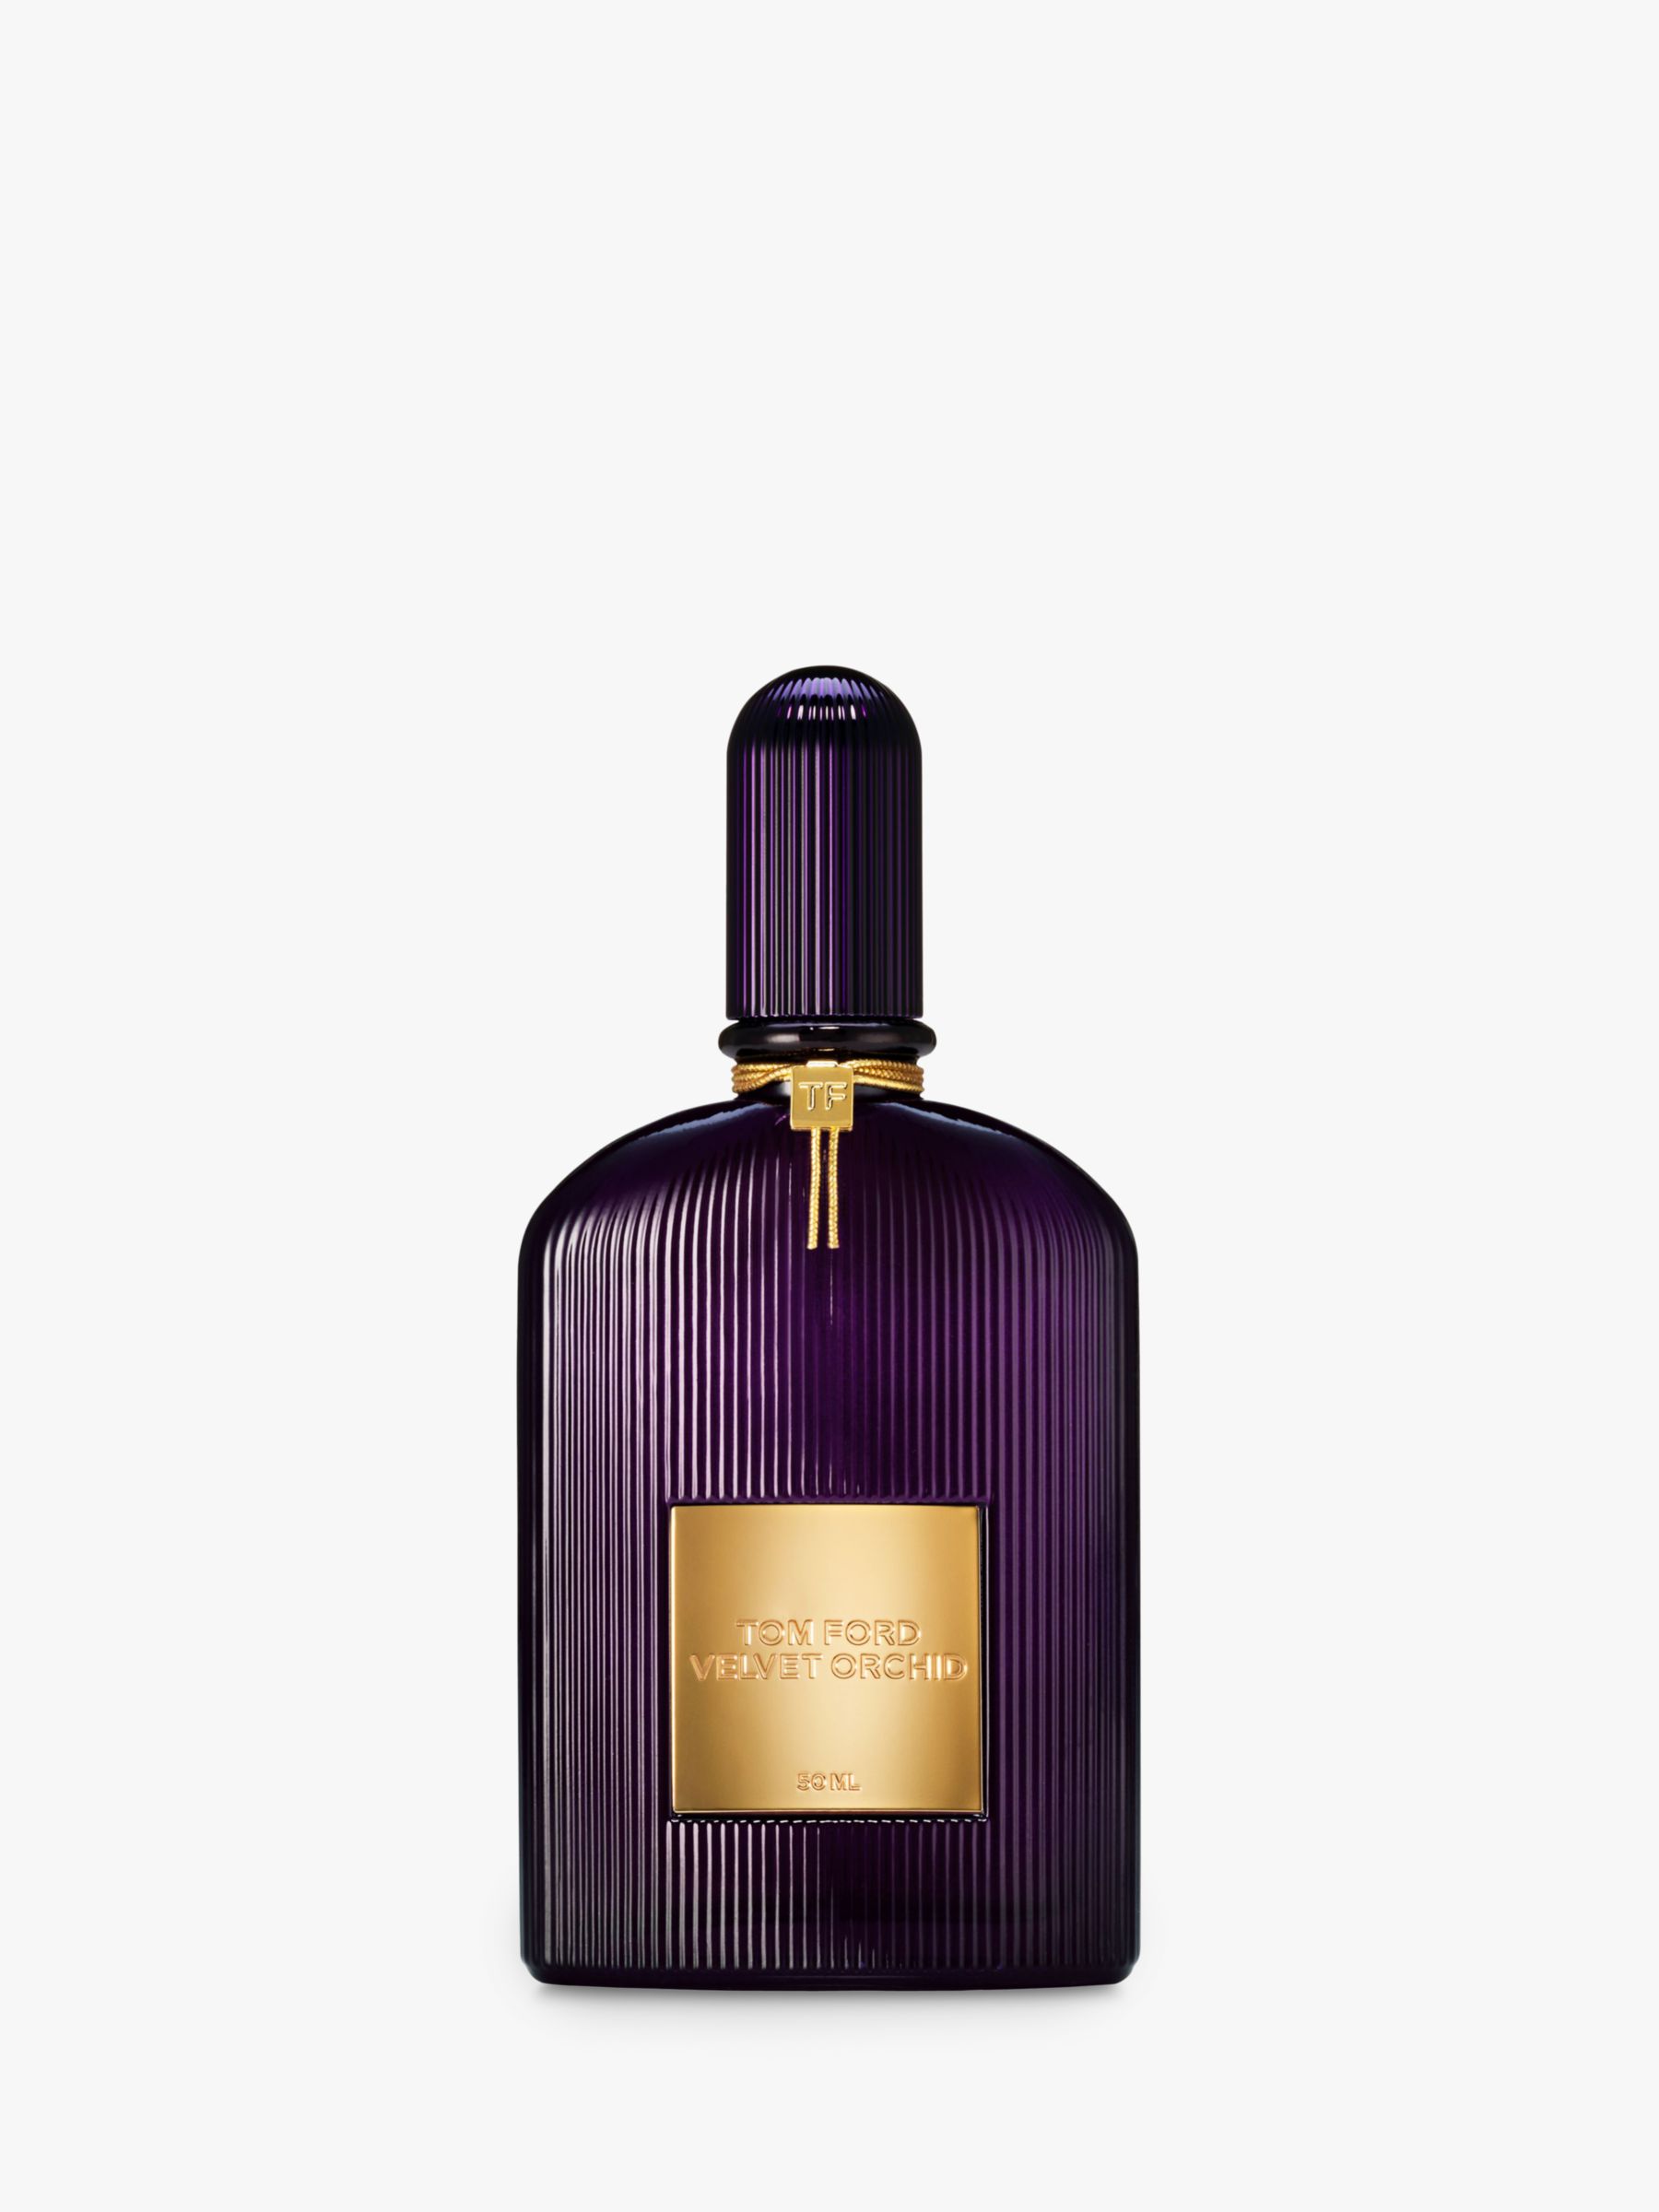 TOM FORD Velvet Orchid Eau de Parfum, 50ml at John Lewis & Partners